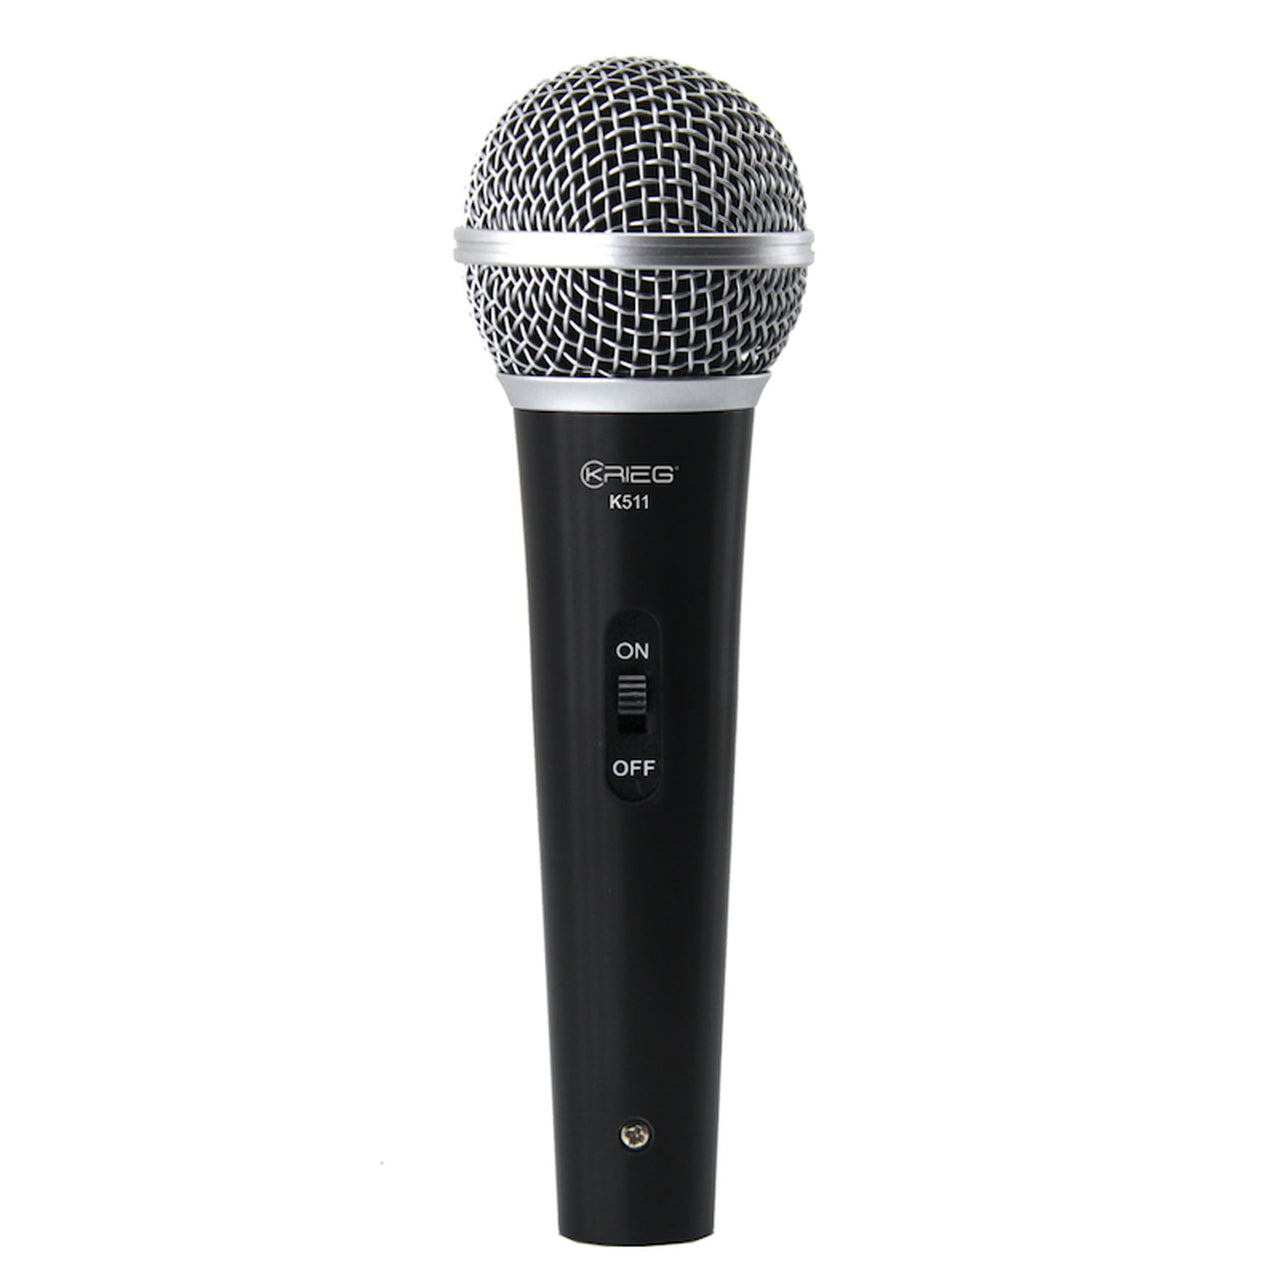 Microfono Krieg Vocal Con Cable Plata, K-511